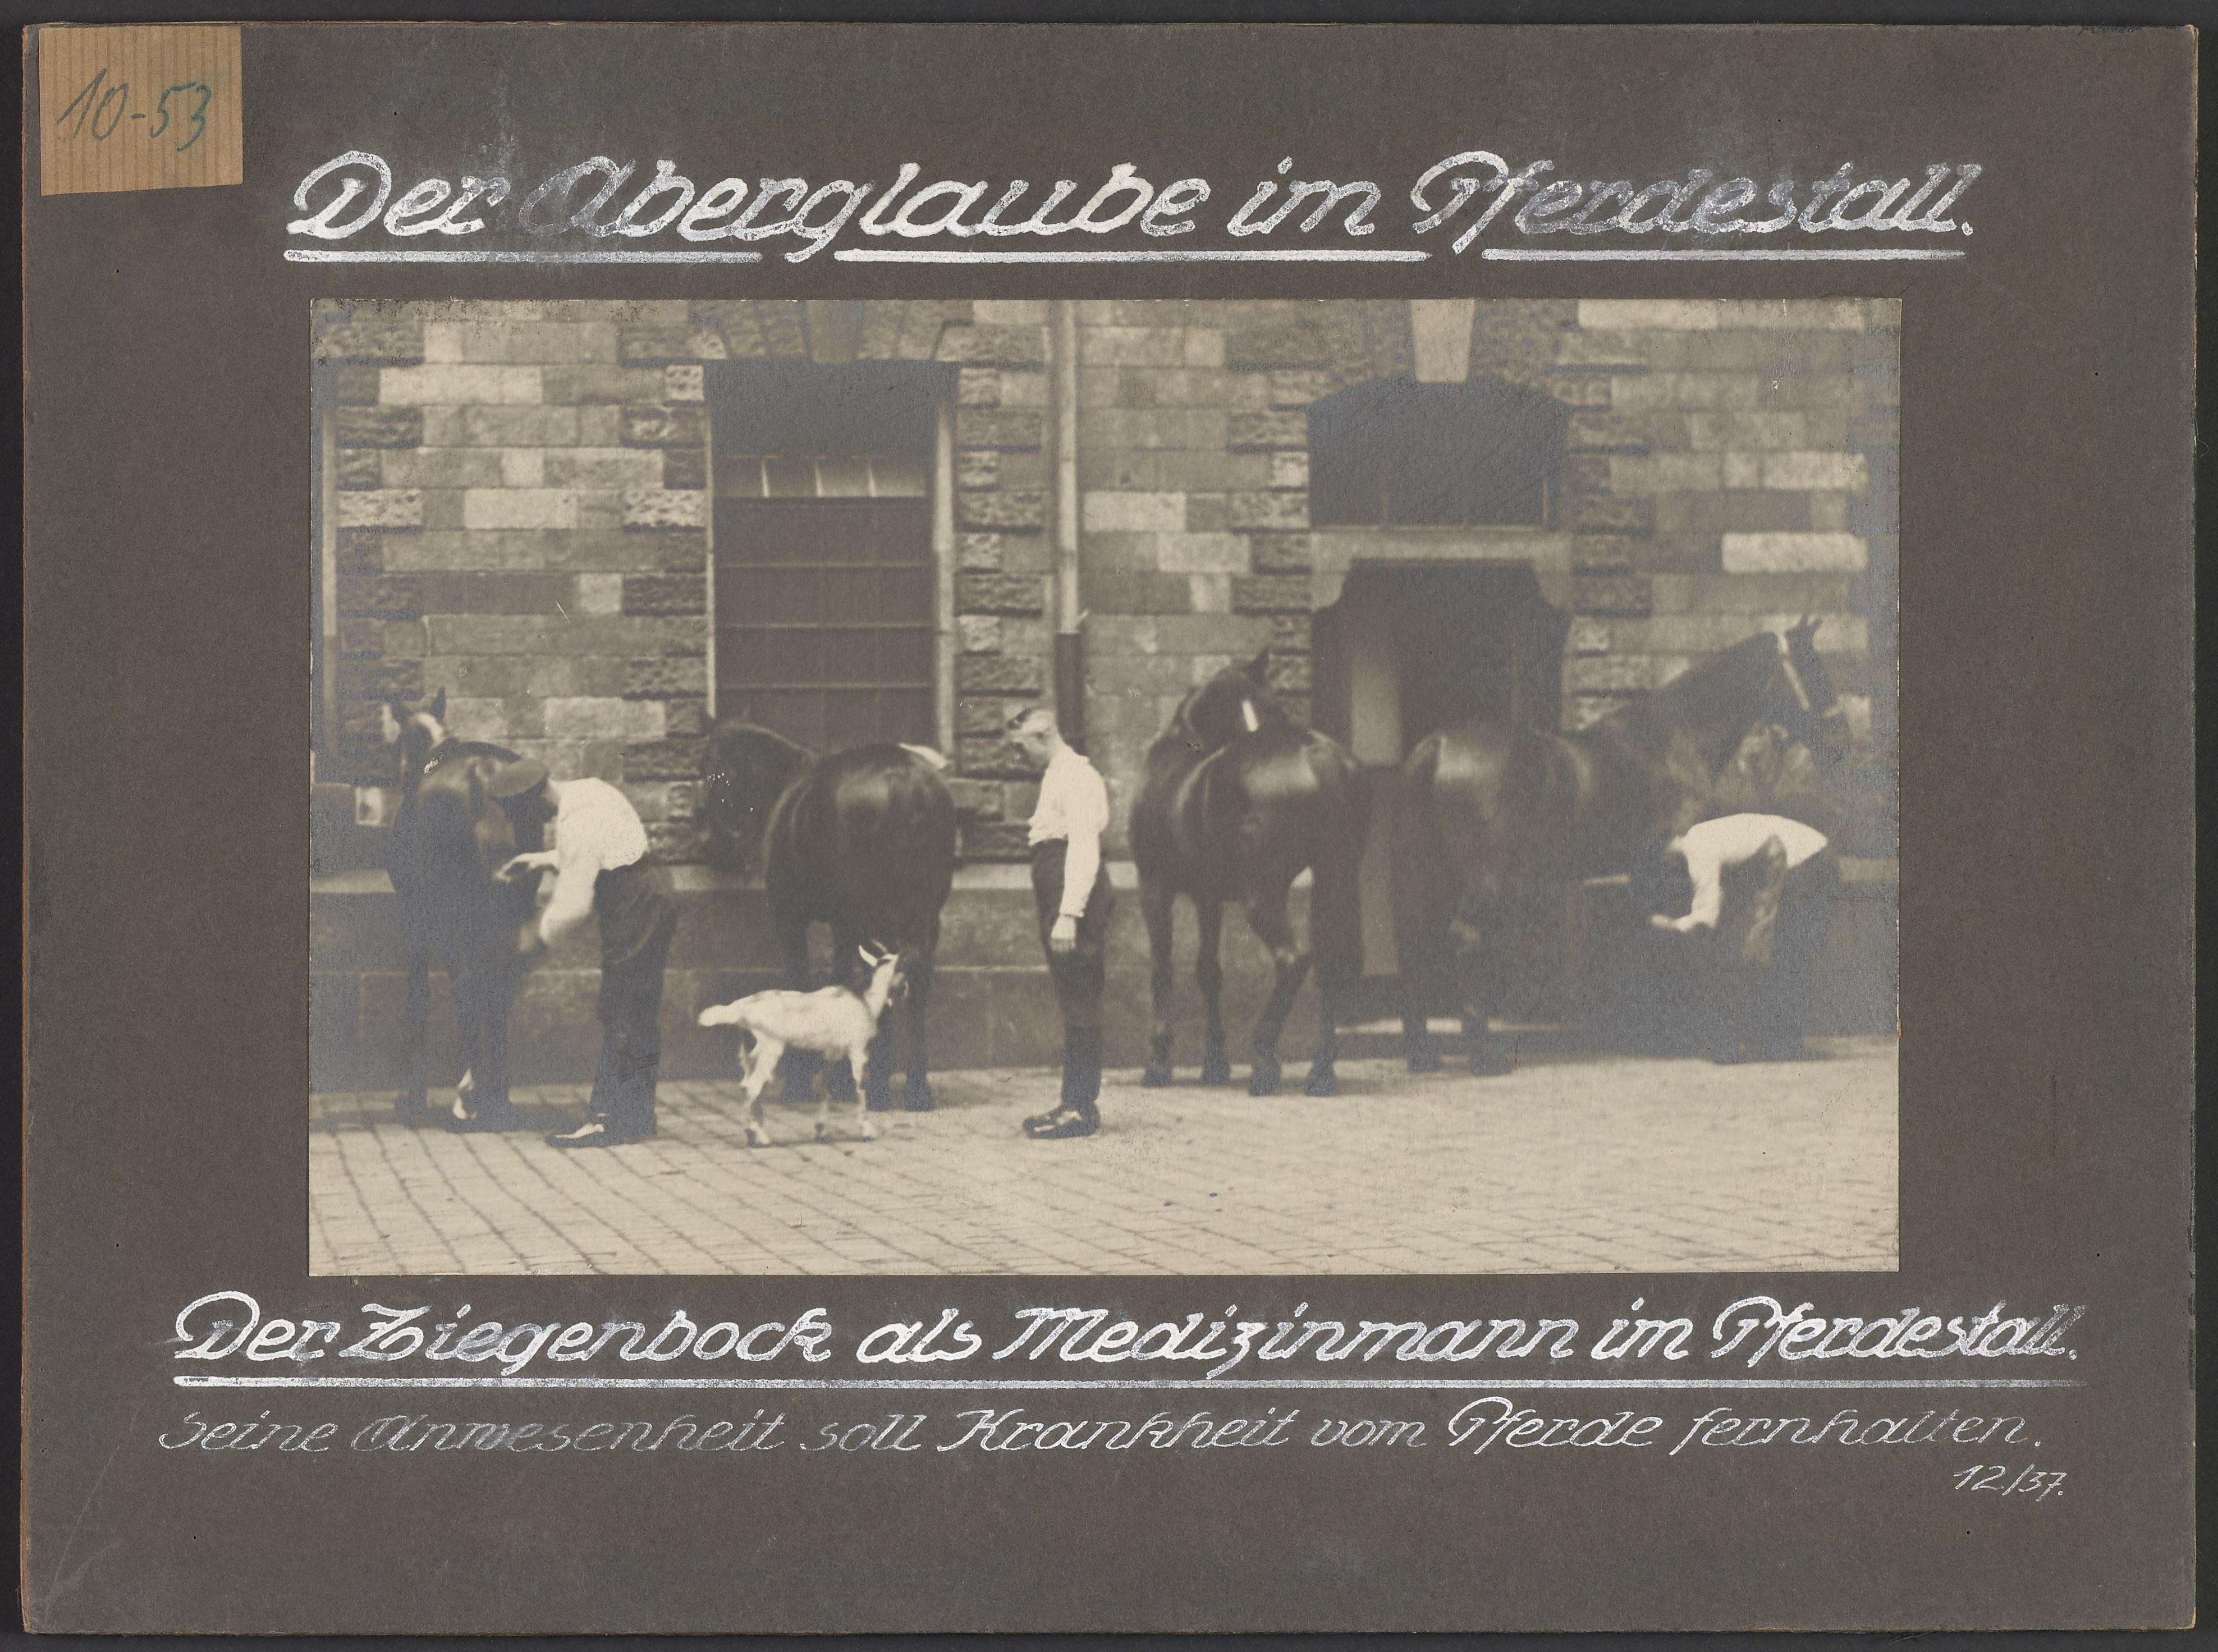 Lehrtafel "Der Aberglaube im Pferdestall" (Polizeidirektion Dresden RR-F)